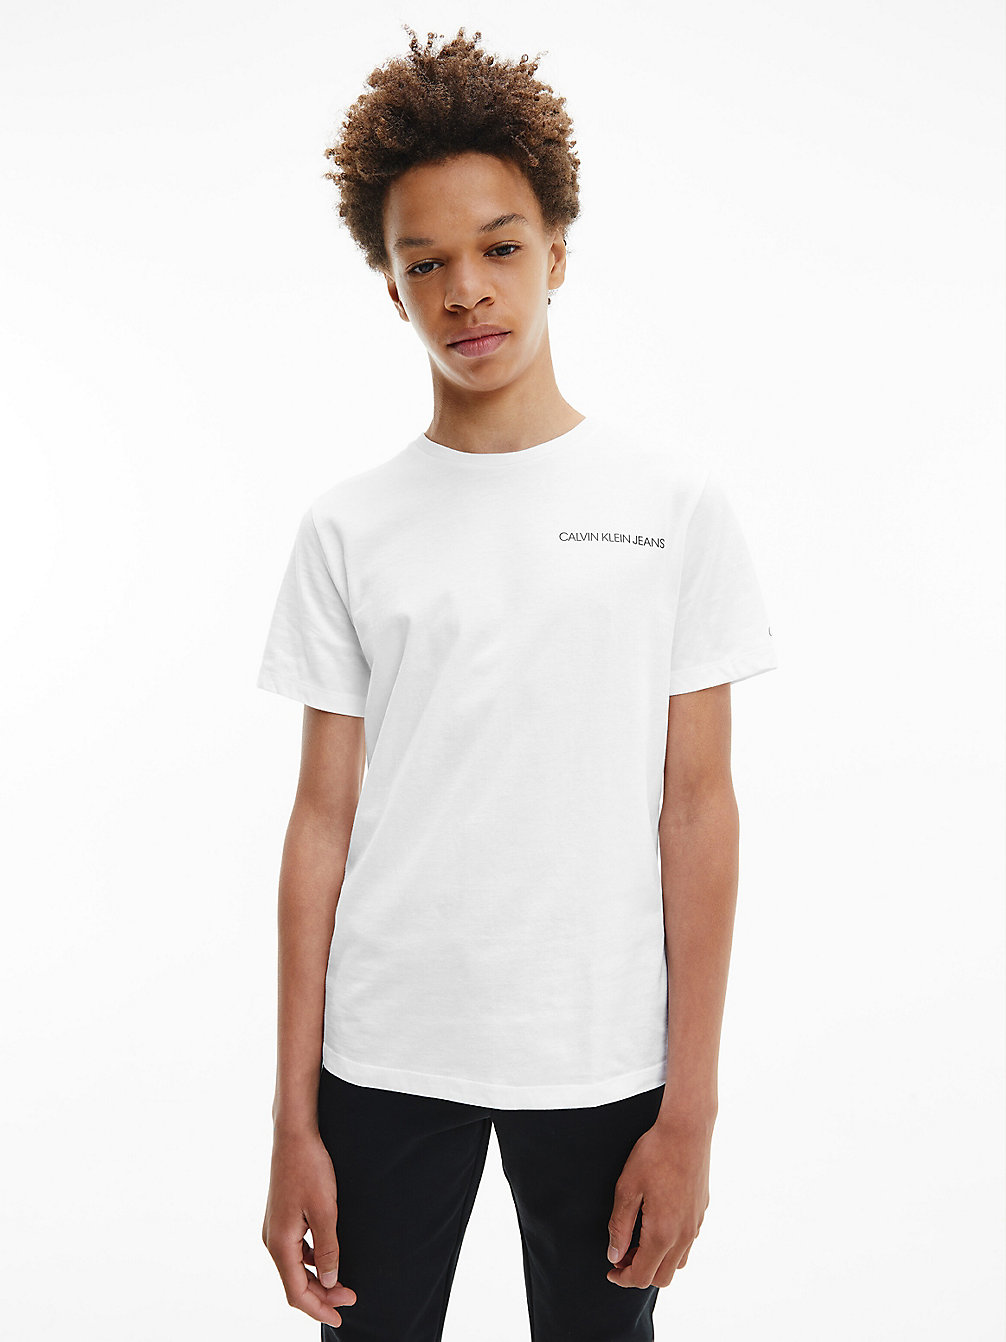 BRIGHT WHITE > T-Shirt Aus Bio-Baumwolle > undefined boys - Calvin Klein